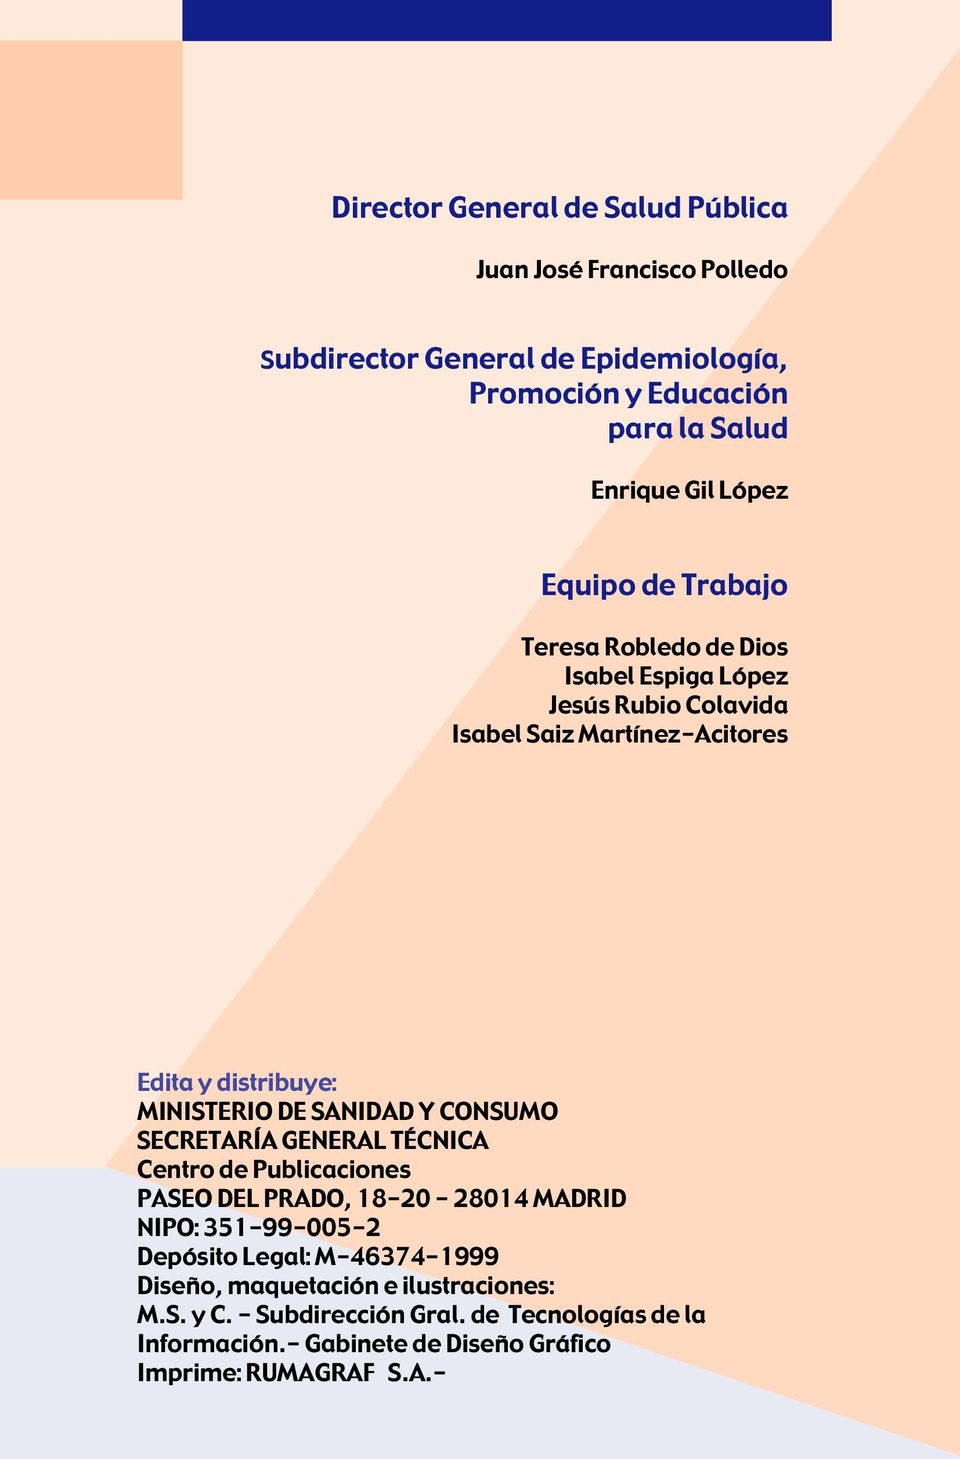 SANIDAD Y CONSUMO SECRETARÍA GENERAL TÉCNICA Centro de Publicaciones PASEO DEL PRADO, 18-20 - 28014 MADRID NIPO: 351-99-005-2 Depósito Legal: